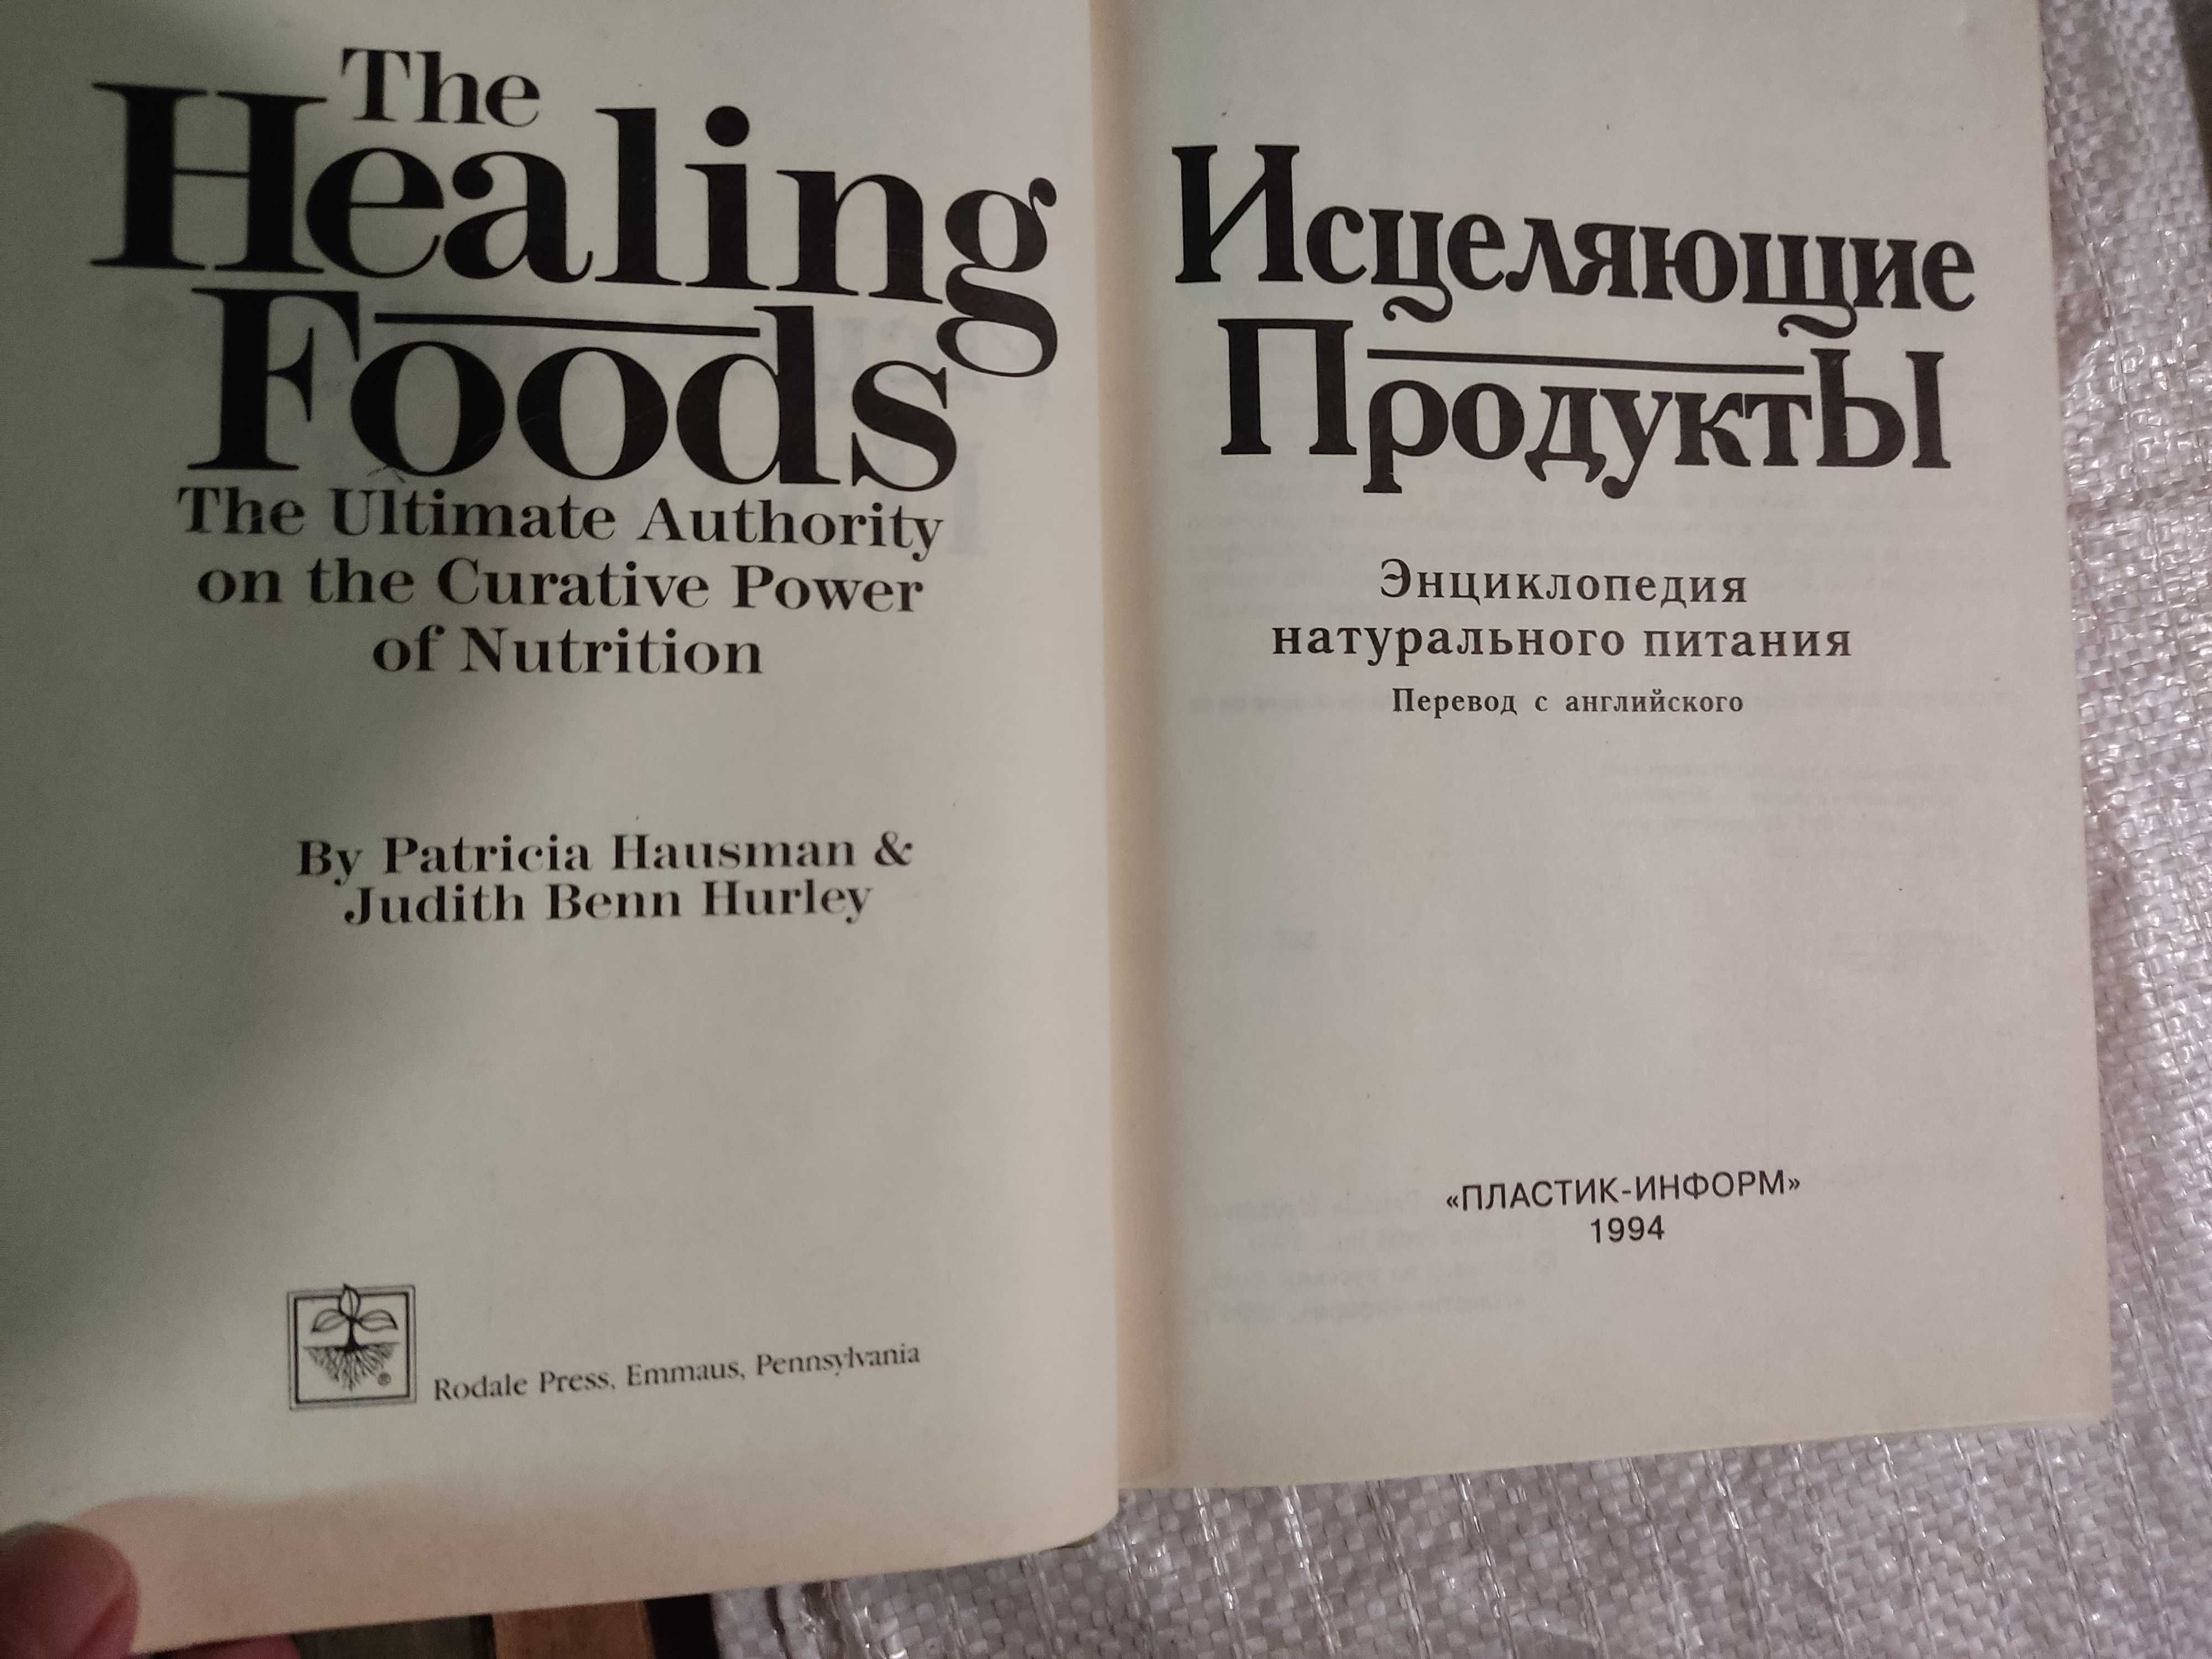 Хаусман и Харлей Исцеляющие продукты Энциклопедия натурального питания